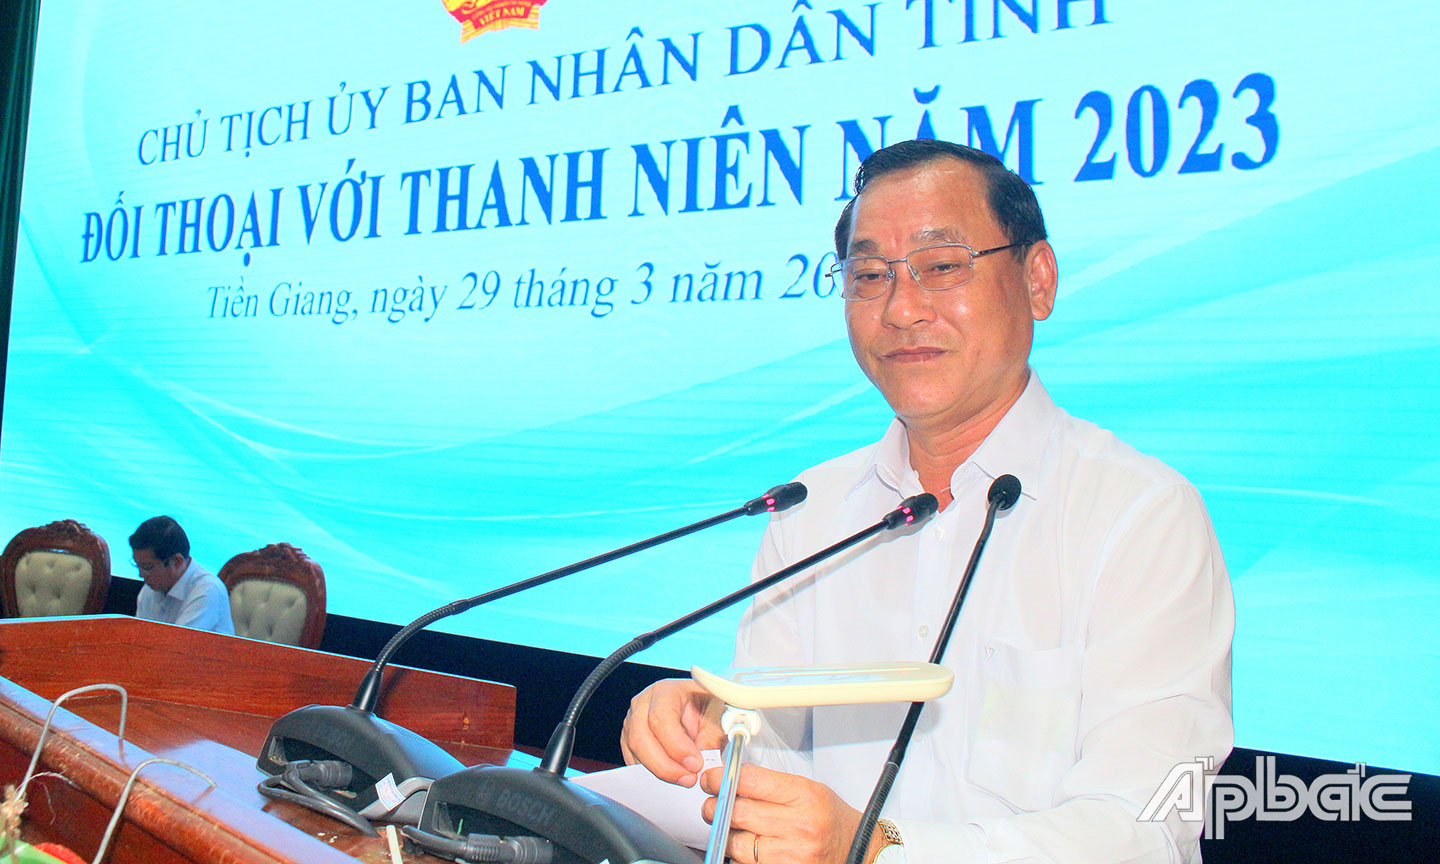 Đồng chí Nguyễn Văn Vĩnh đối thoại với thanh niên. Phó Bí thư Xã đoàn Long Thuận (TX. Gò Công) Phan Minh Tuấn đặt vấn đề  tại buổi đối thoại.